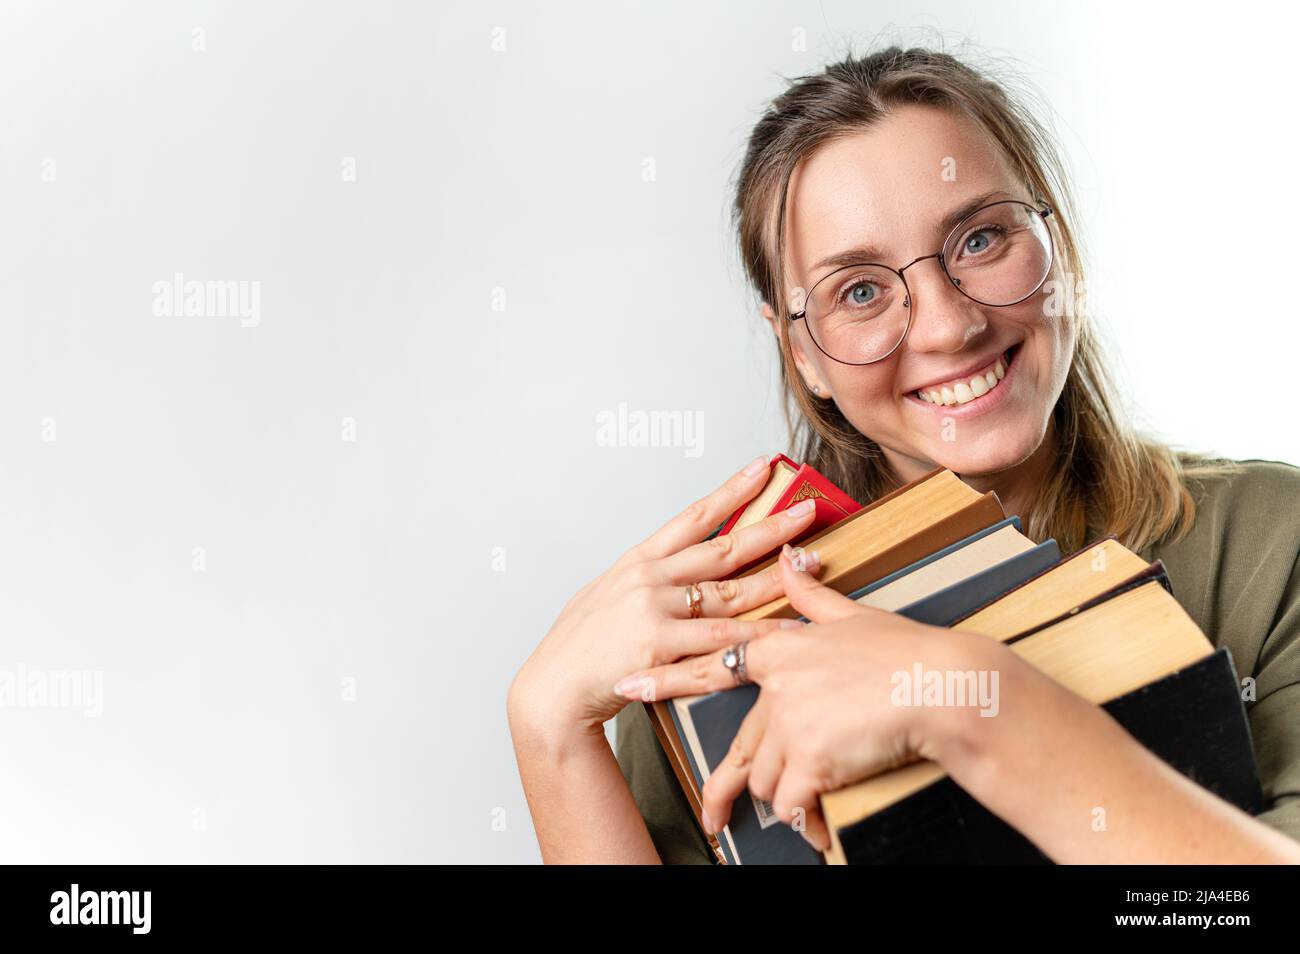 Giovane eccitata donna sorridente studentessa che tiene libri dal suo volto, sfondo bianco Foto Stock